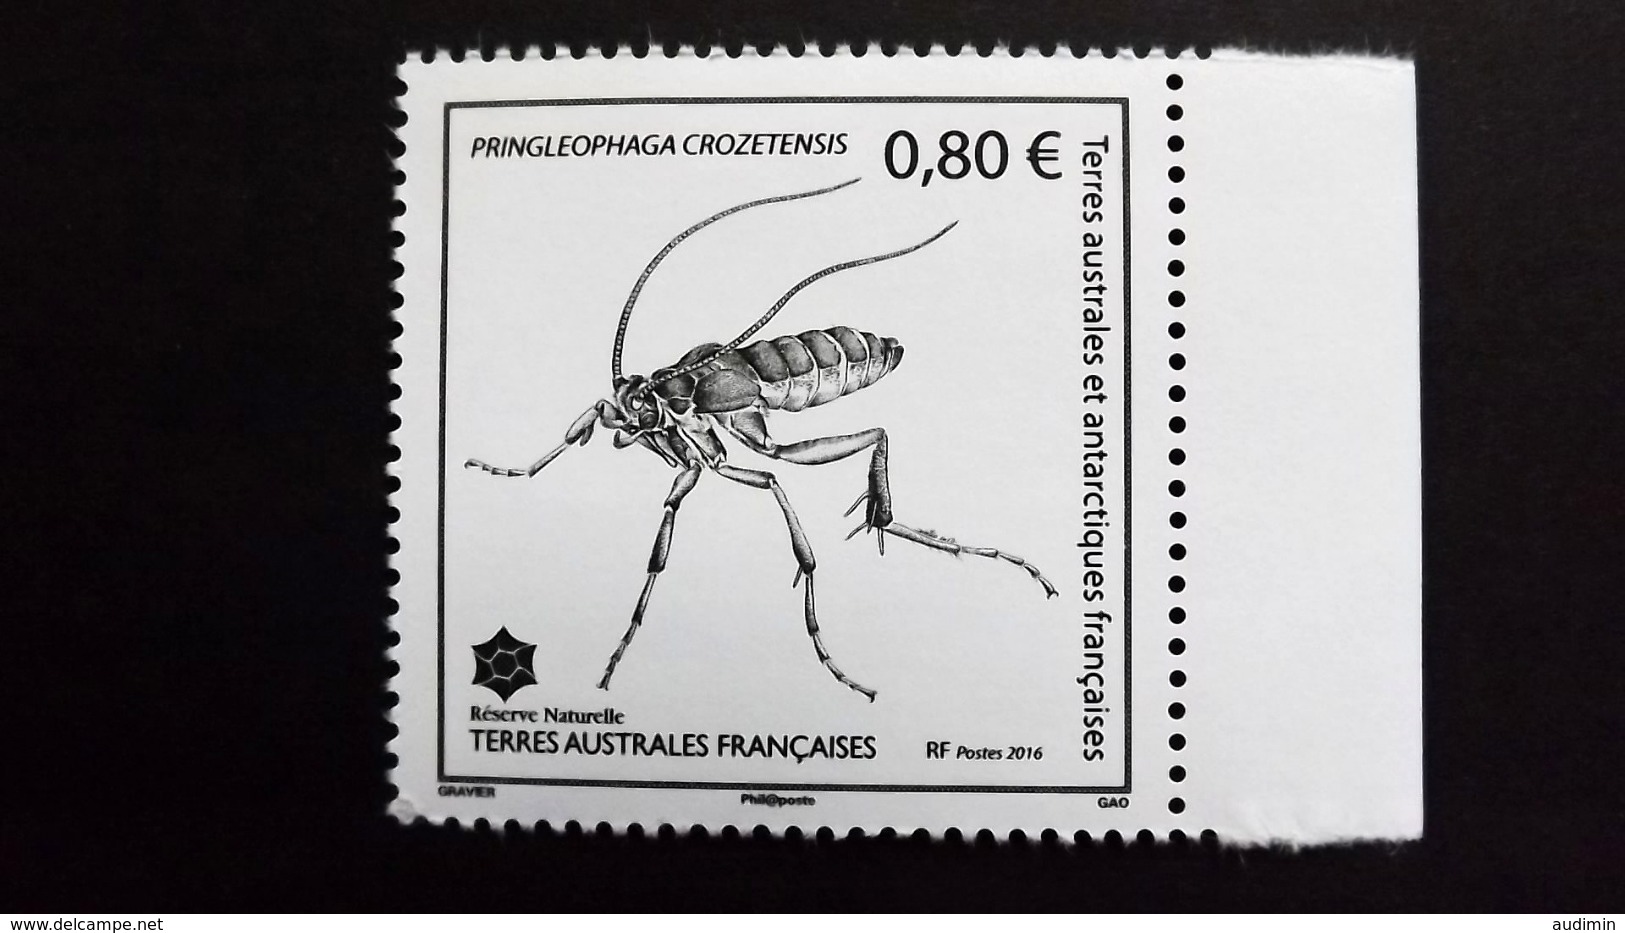 Französische Süd- Und Antarktisgebiete TAAF 914 **/mnh, Pringleophaga Crozetensis (endemische Schmetterlingsart) Crozet - Ungebraucht